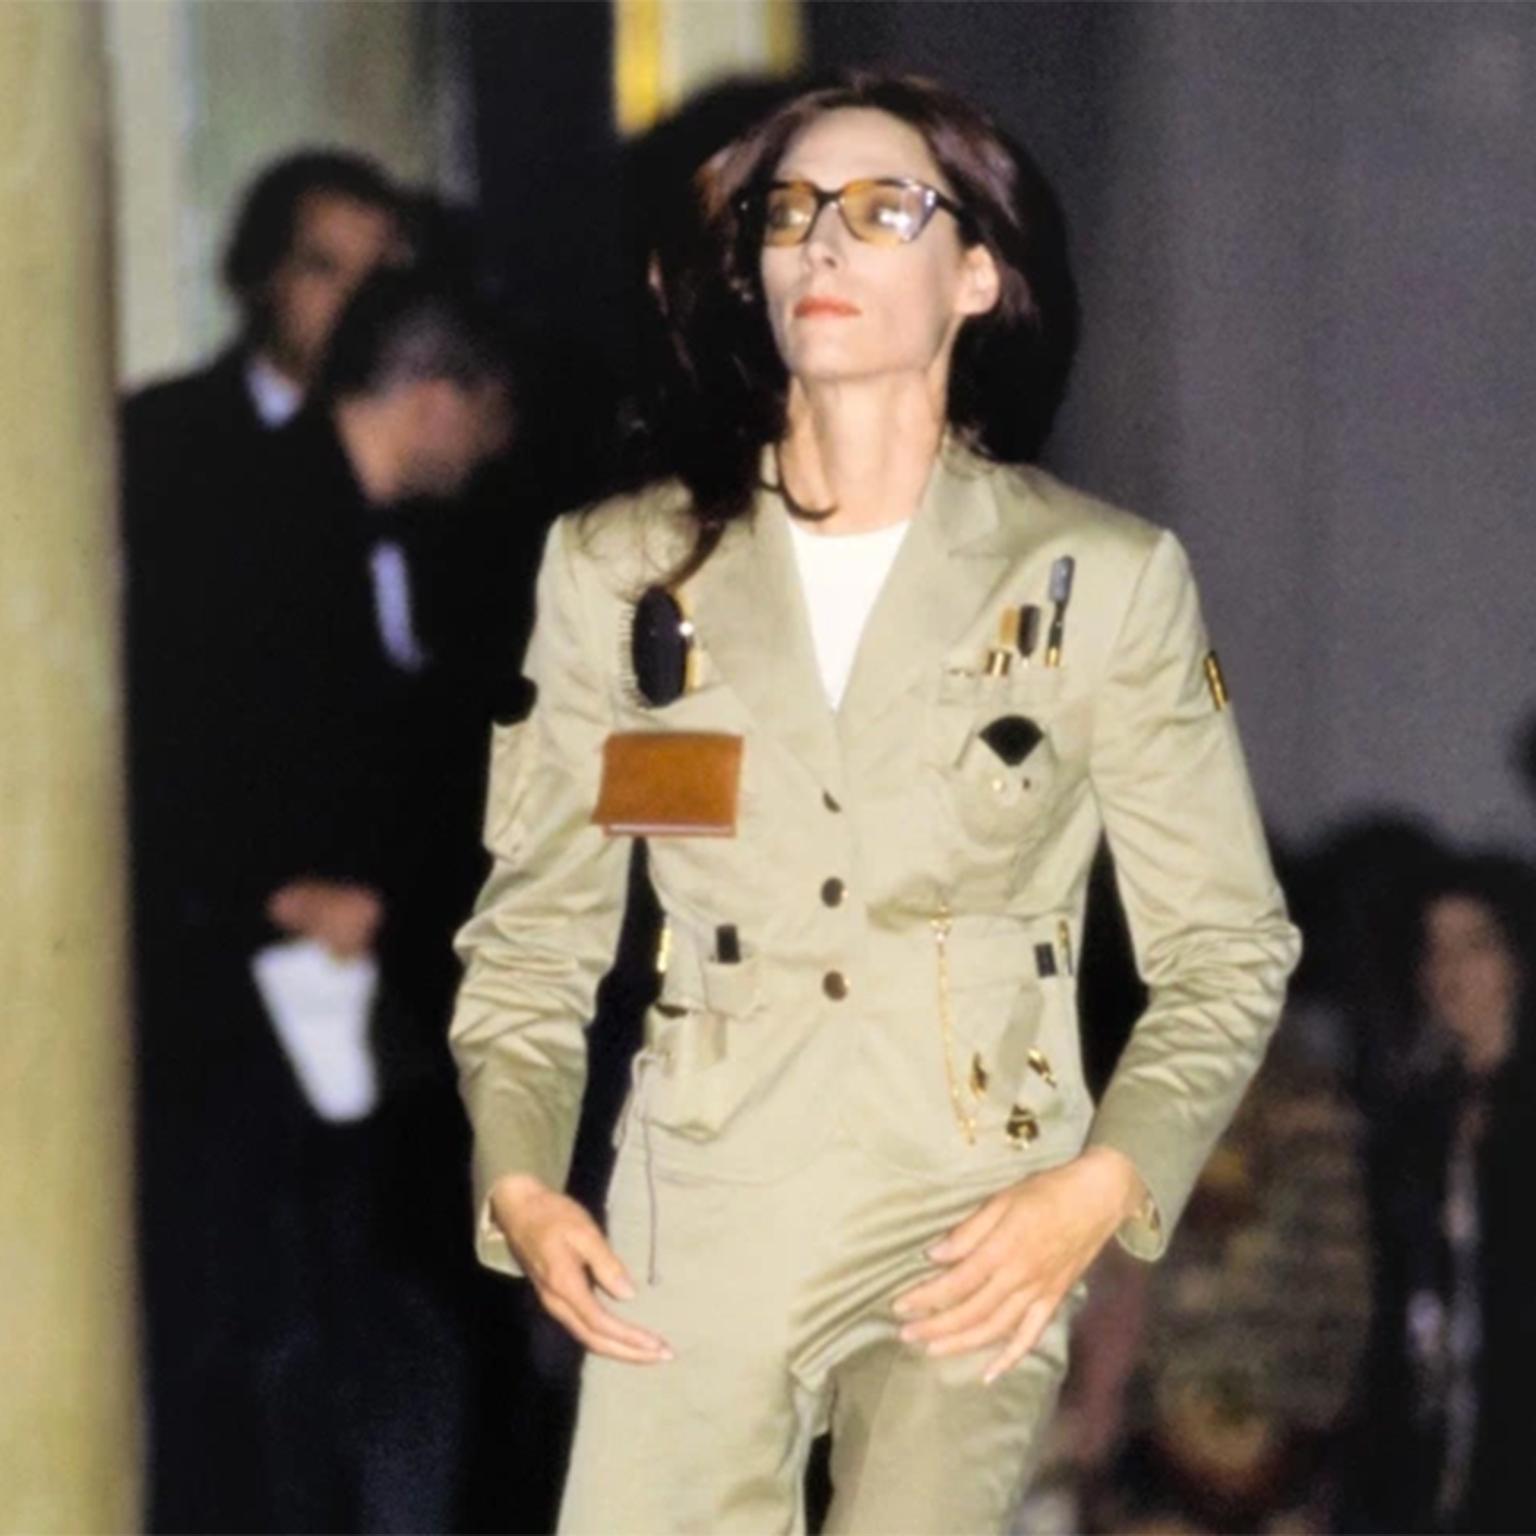 Dies ist eine sehr seltene Frühjahr Sommer 1991 Franco Moschino Couture Khaki Safari-Stil Survival Jacket mit Werkzeugen, um den städtischen Dschungel zu überleben!  Diese ikonische Jacke war auf dem Laufsteg in unserer Lieblings-Moschino-Show im